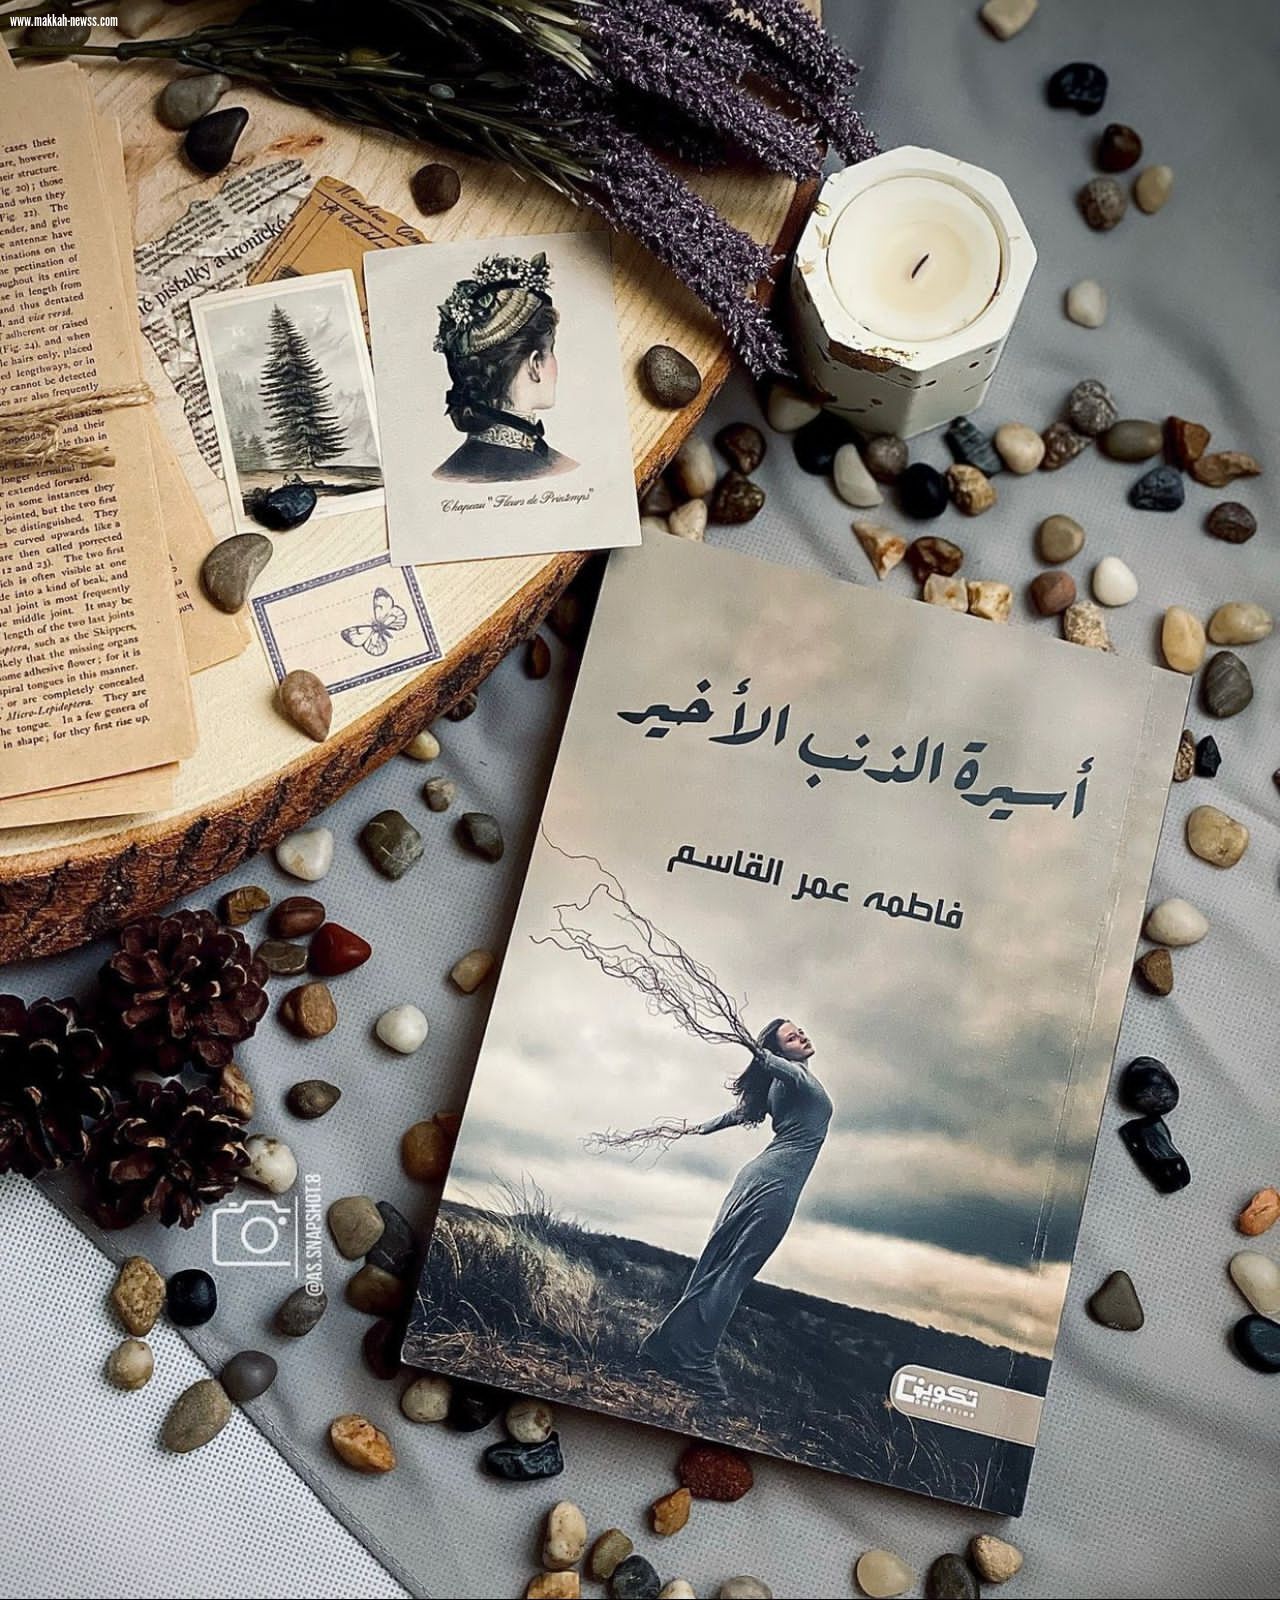 صحيفة صوت مكة الاجتماعية  تحاور الكاتبة فاطمة عمر القاسم  : ظاهرة مراجعة الكتب أصبحت تجارية وليست لغرض التطوير أو الانتقاد البناء.